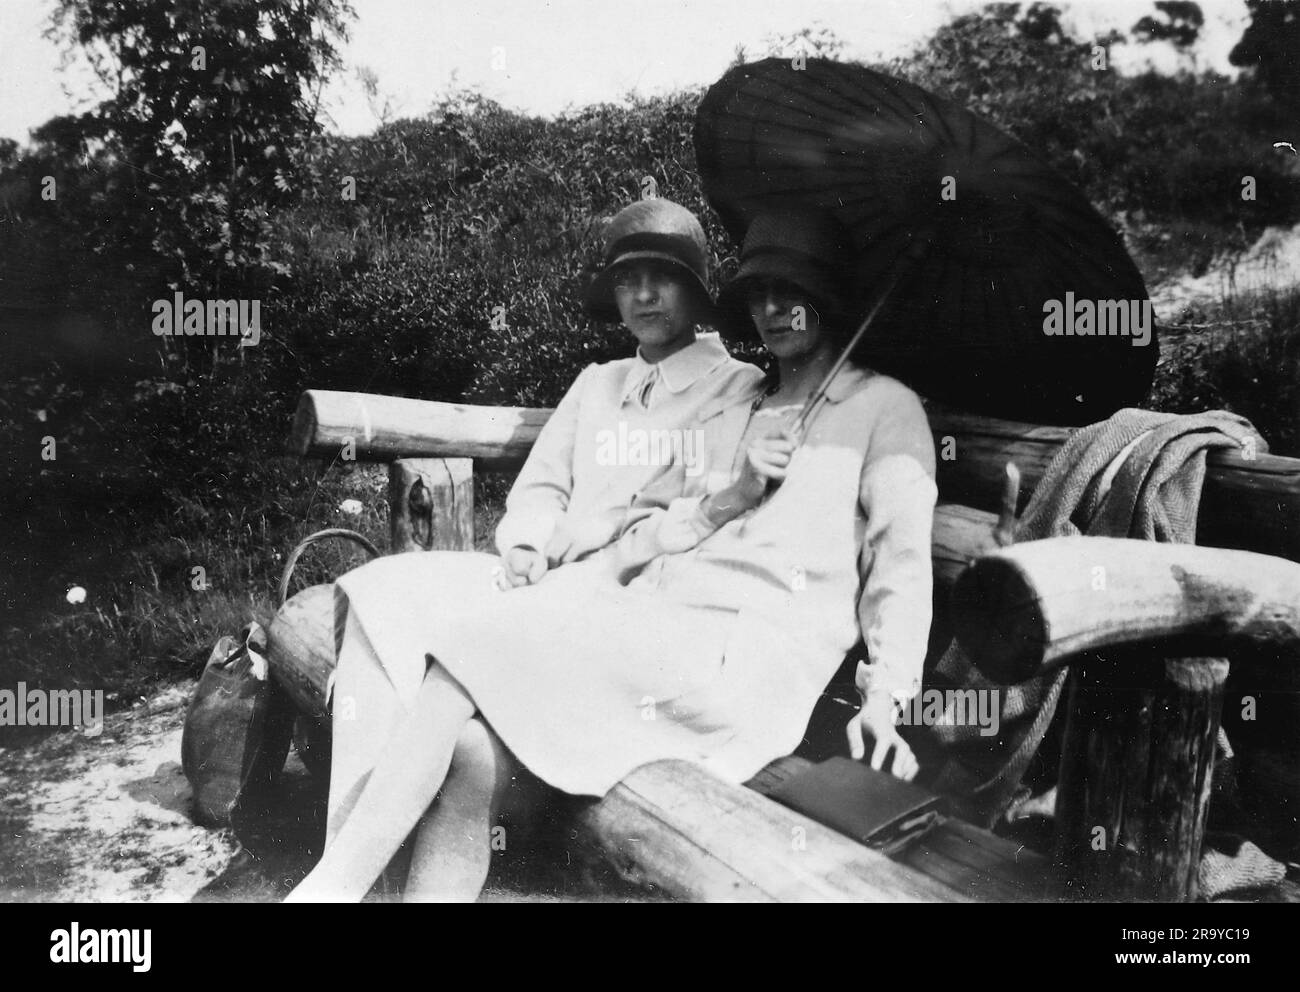 Zwei Damen, eine mit Sonnenschirm, sitzen auf dem Land von Surrey. Foto aus einem Familienalbum mit Bildern, die hauptsächlich im Vereinigten Königreich aufgenommen wurden, um 1929. Die Familie lebte in Witley, Surrey, und hatte Verbindungen zum Militär. Stockfoto